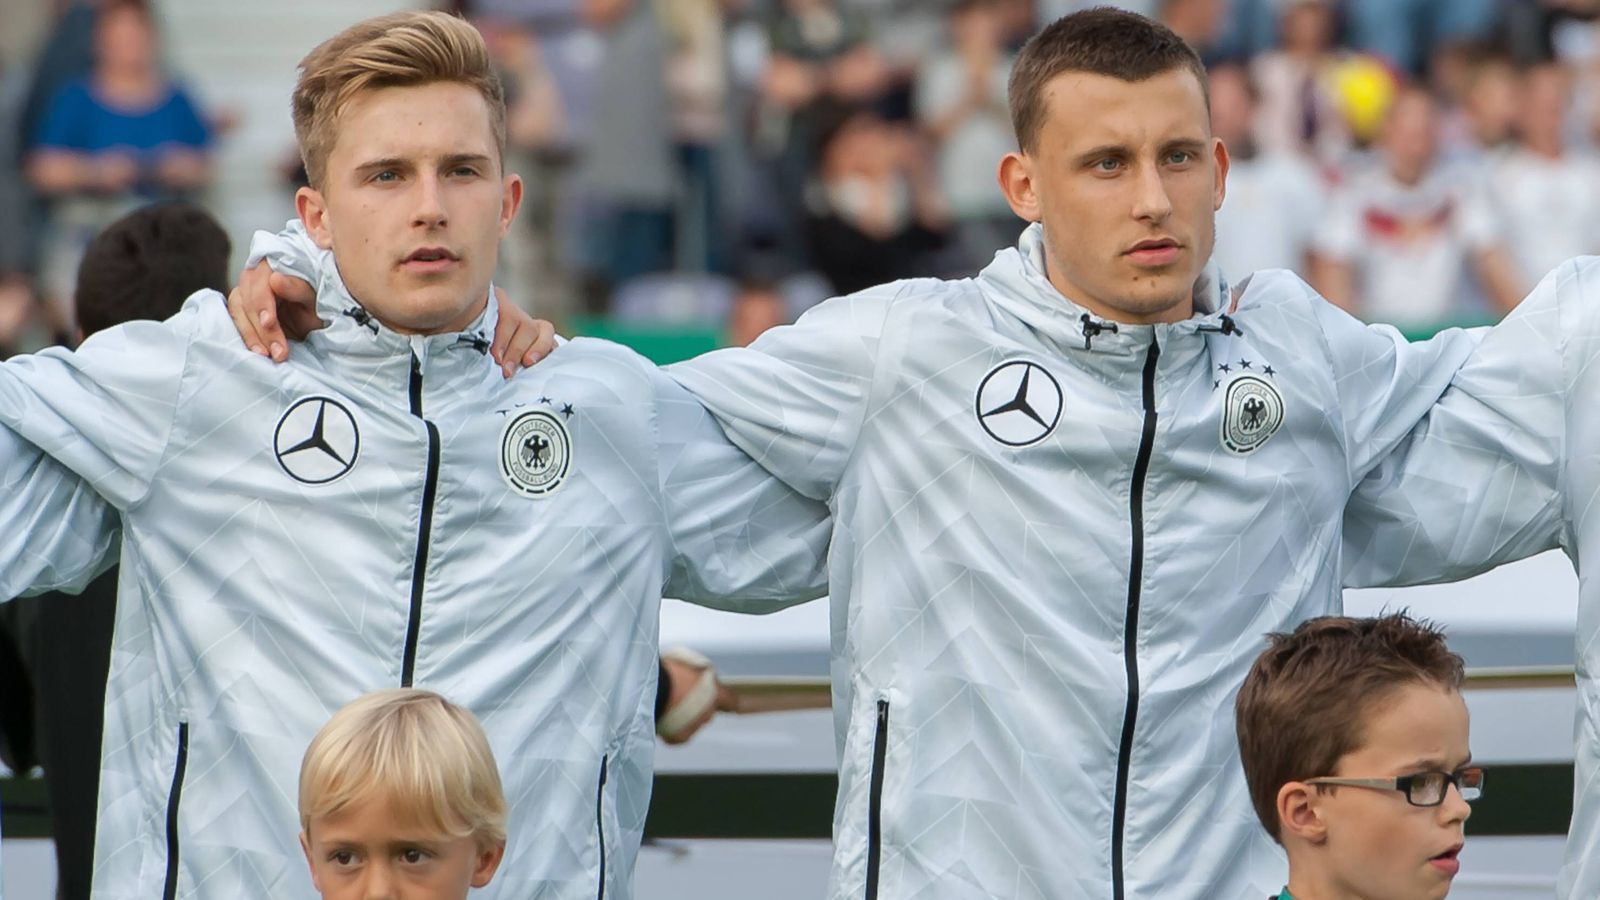 
                <strong>DFB-Team mit dem einzigen Brüderpaar bei EM-Endrunde</strong><br>
                Mit den beiden Bremern Johannes (li.) und Maximilian Eggestein (re.) steht im deutschen Kader für die EM 2019 auch das einzige Brüderpaar. 
              